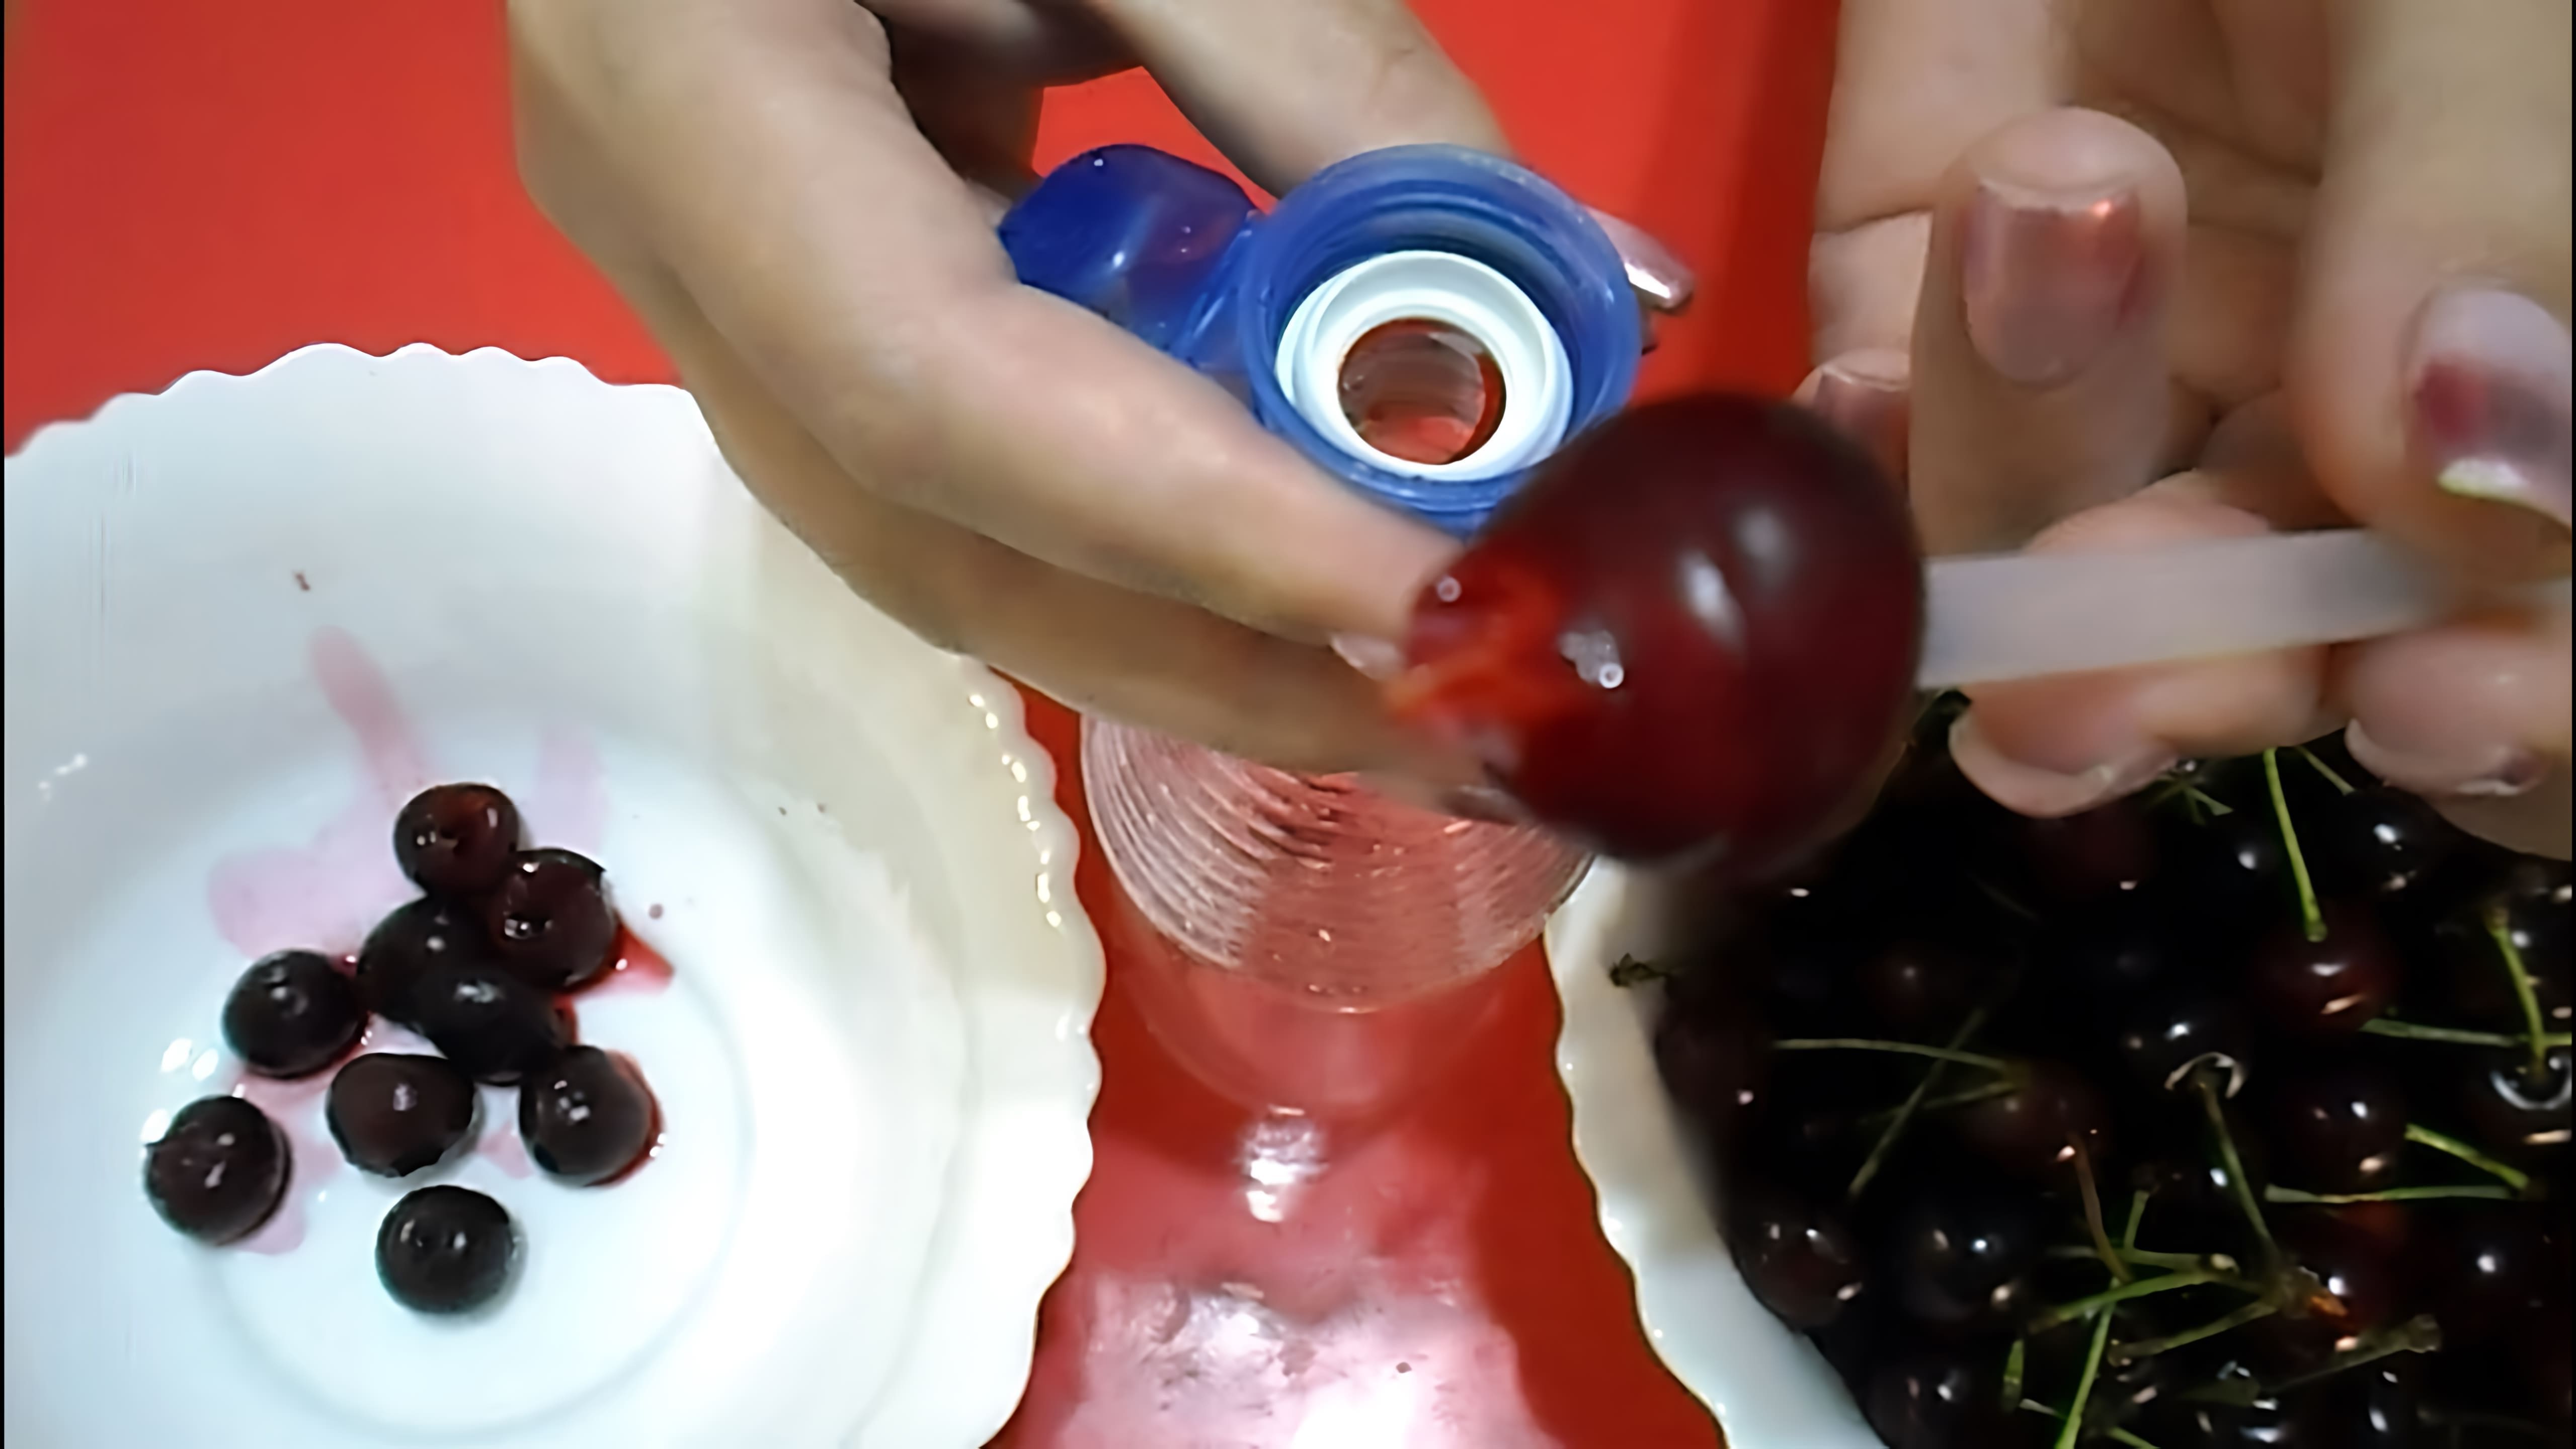 В этом видео демонстрируются пять способов удаления косточки из вишни с помощью подручных средств